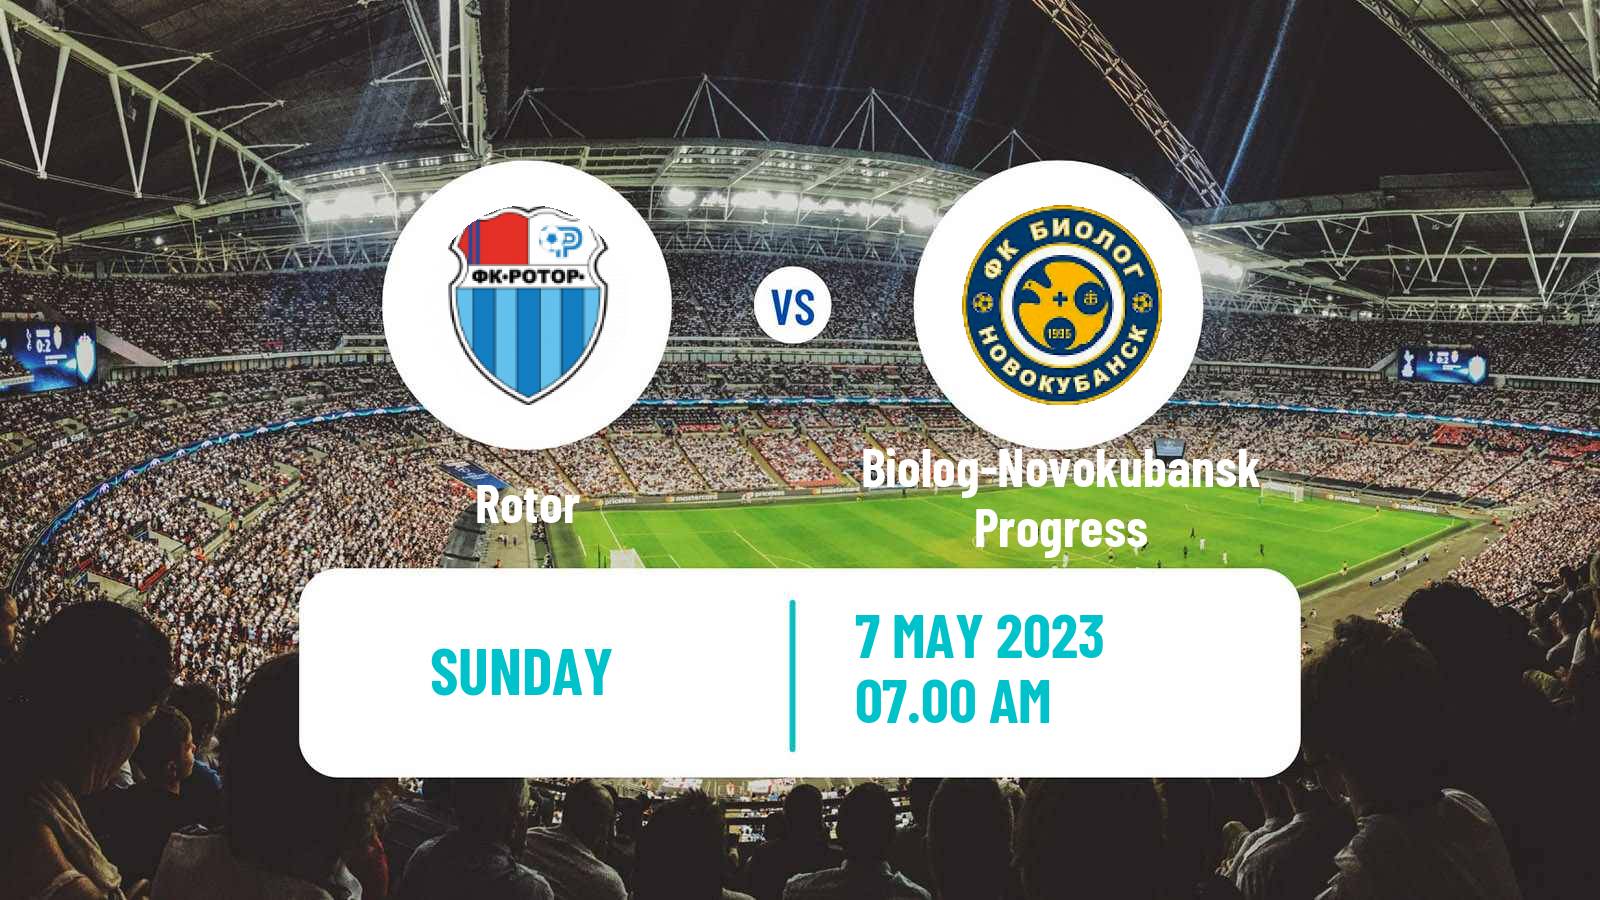 Soccer Russian FNL 2 Group 1 Rotor - Biolog-Novokubansk Progress